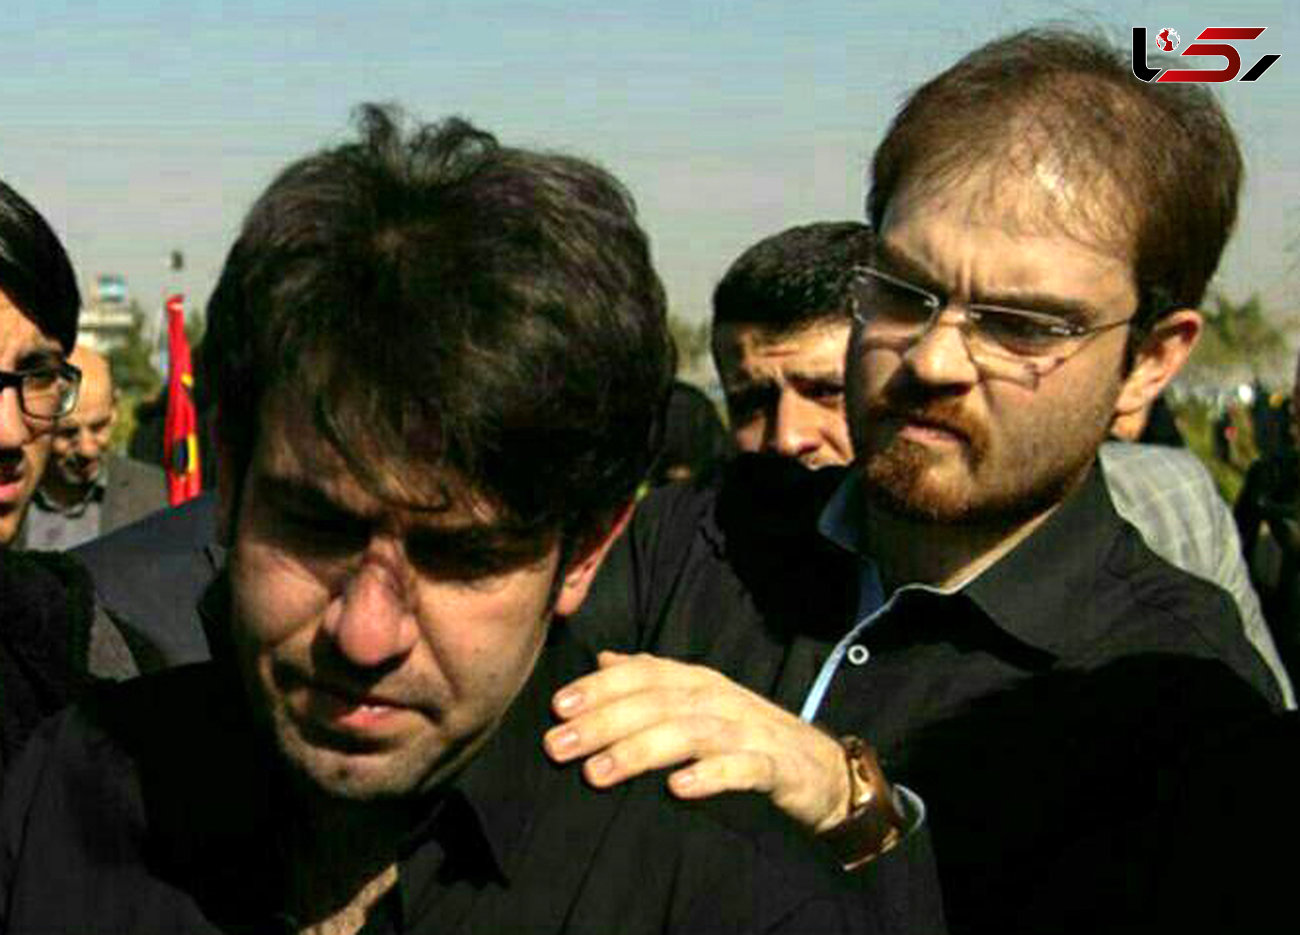 علیرضا صلحی، پزشک معروف تبریزی، خود متهم به قتل خانواده اش شد  / در غذای نذری سیانور بوده است+ عکس